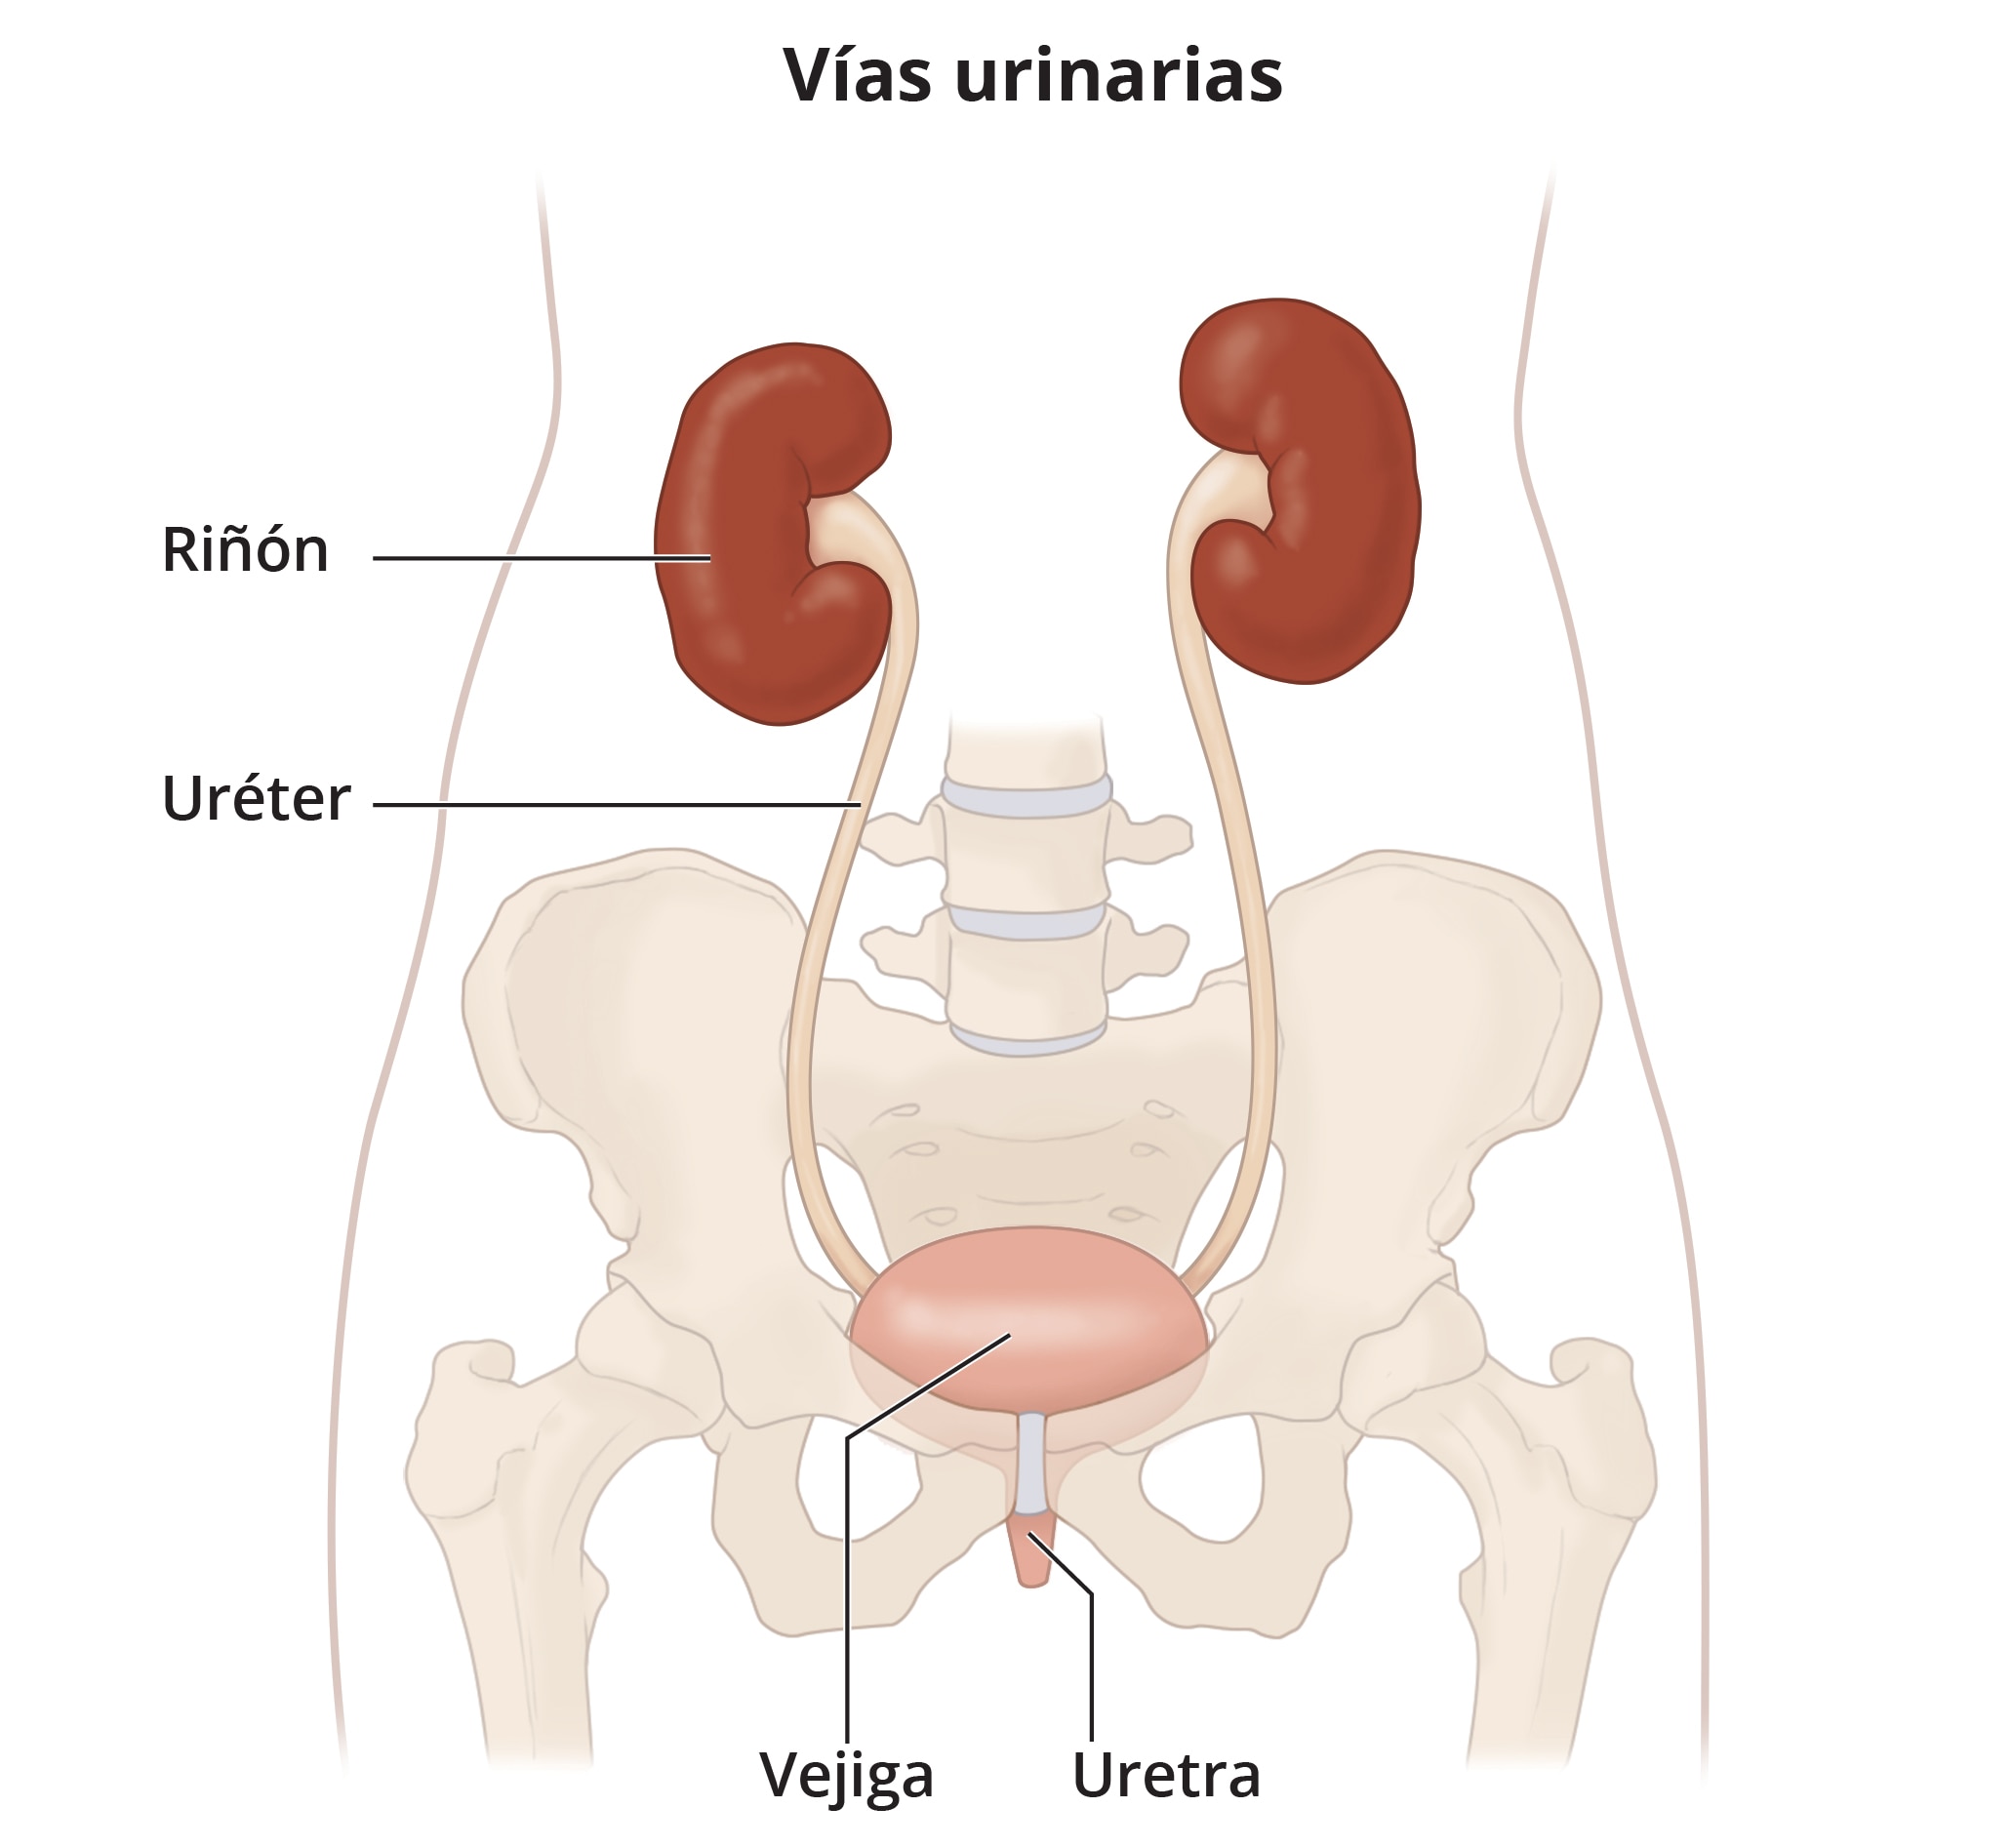 Vías urinarias que incluyen los riñones, uréteres, vejiga y uretra.